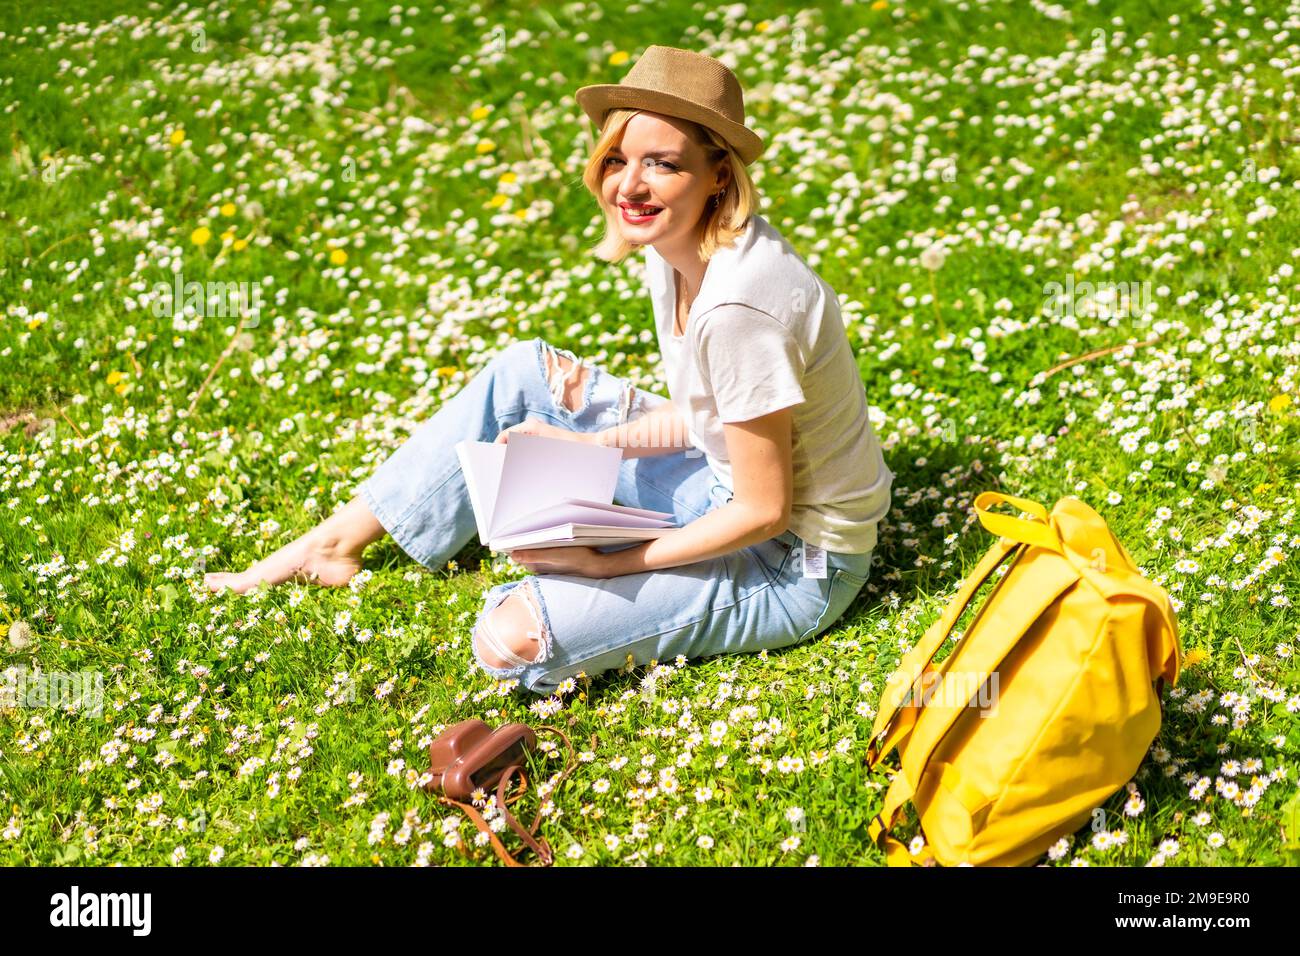 Una giovane bionda in un cappello scrivere poesie in un taccuino in primavera in un parco della città, la natura, seduto sull'erba accanto alle margherite Foto Stock